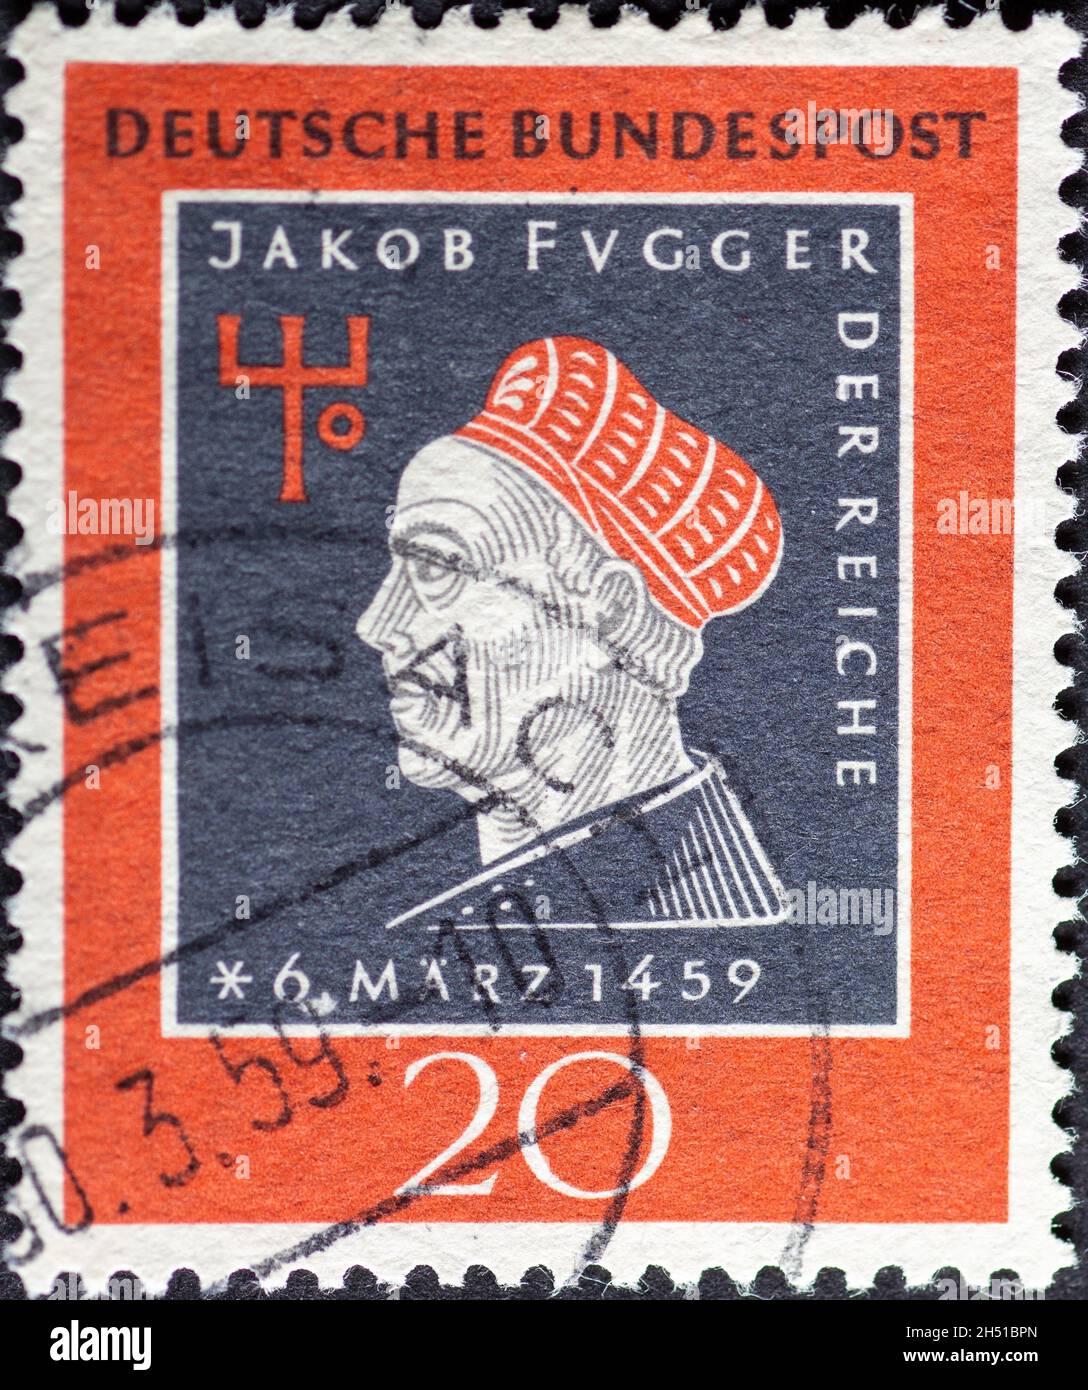 ALLEMAGNE - VERS 1959: Un timbre-poste imprimé en Allemagne montrant une image de Jacob Fugger les riches.Texte : anniversaire de 500 ans Banque D'Images